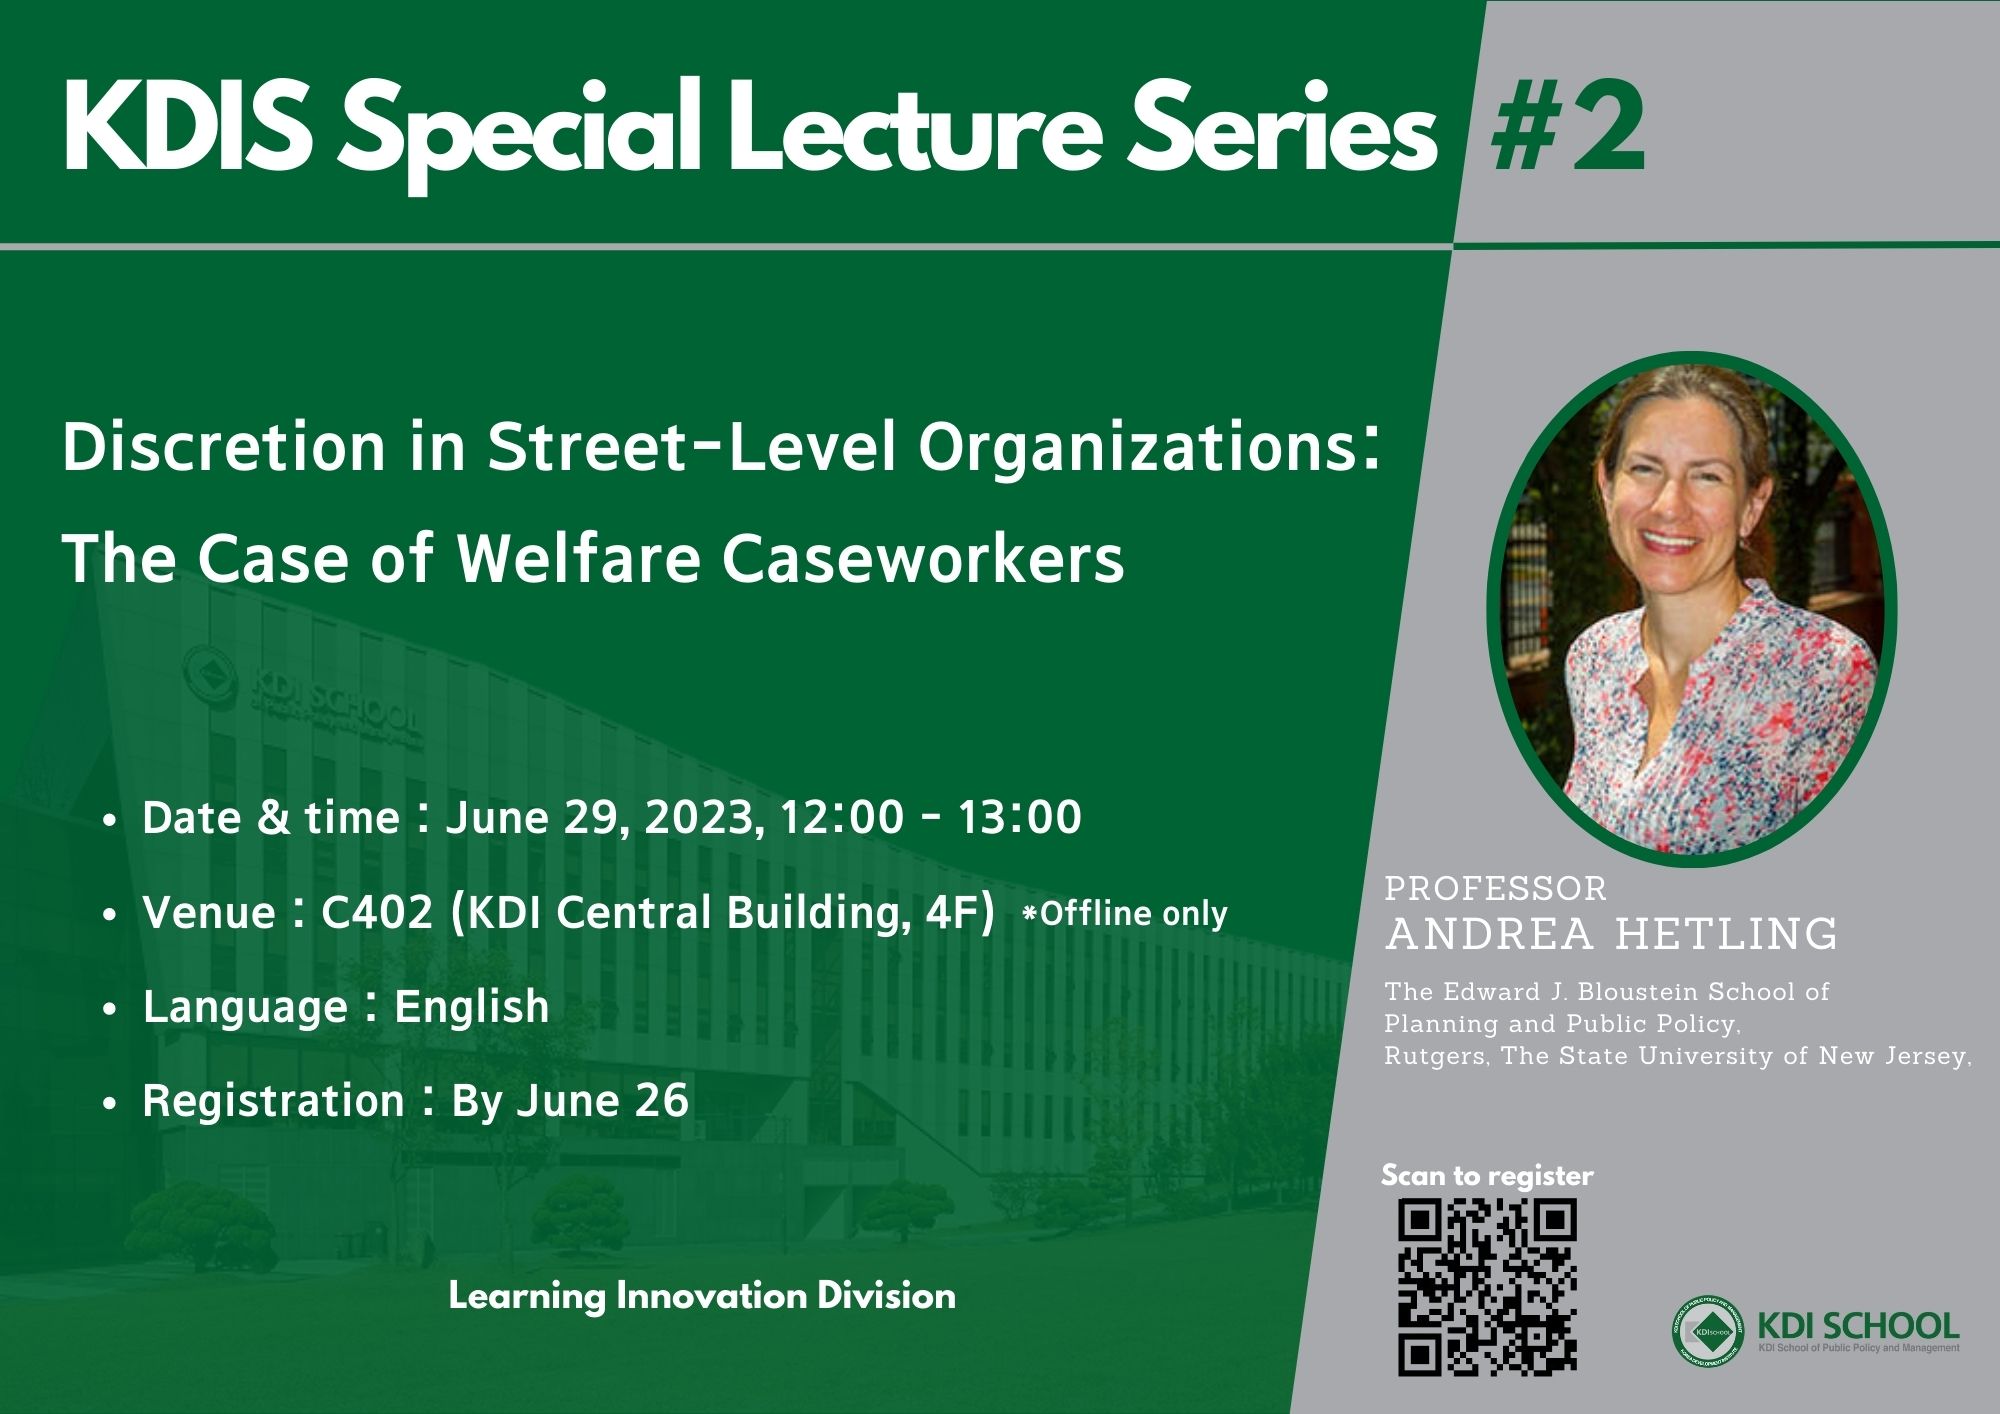 KDIS Special Lecture Series #2 (Professor Andrea Hetling, Rutgers University)